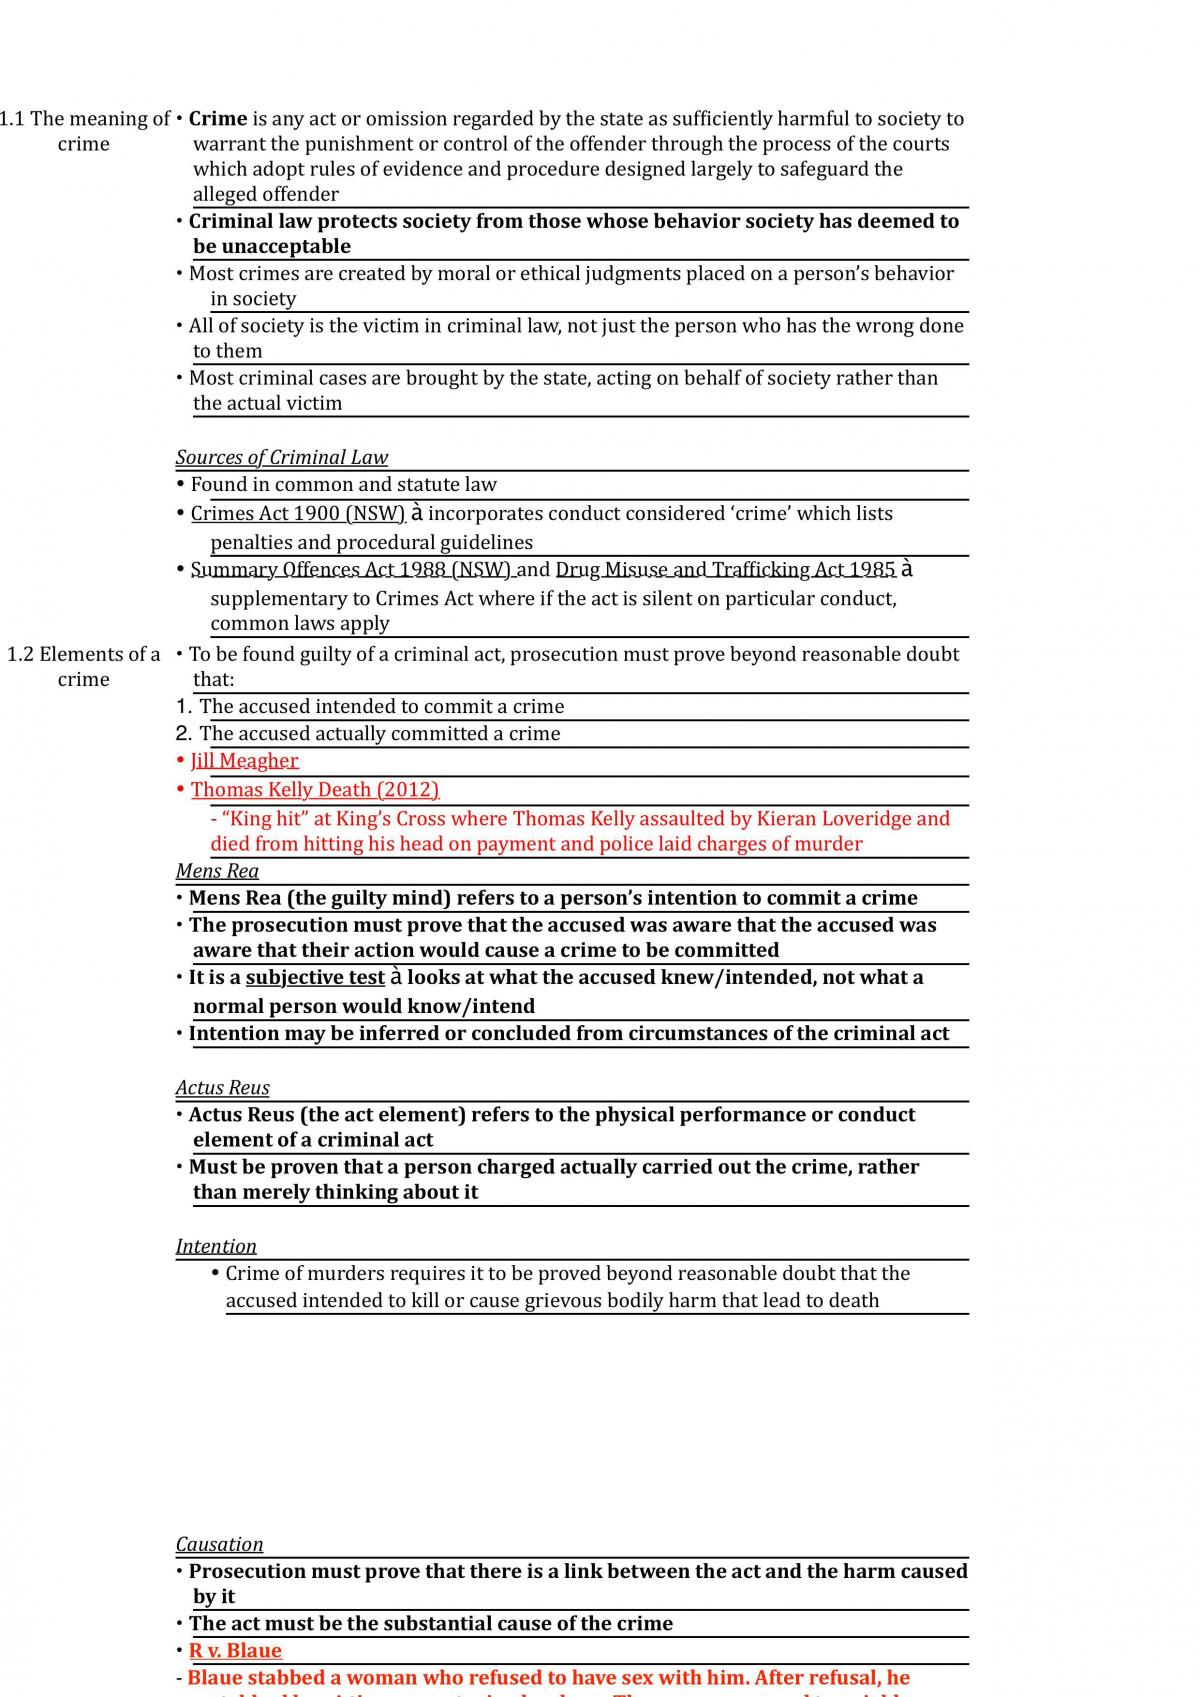 HSC Legal Studies Crime Notes - Page 1